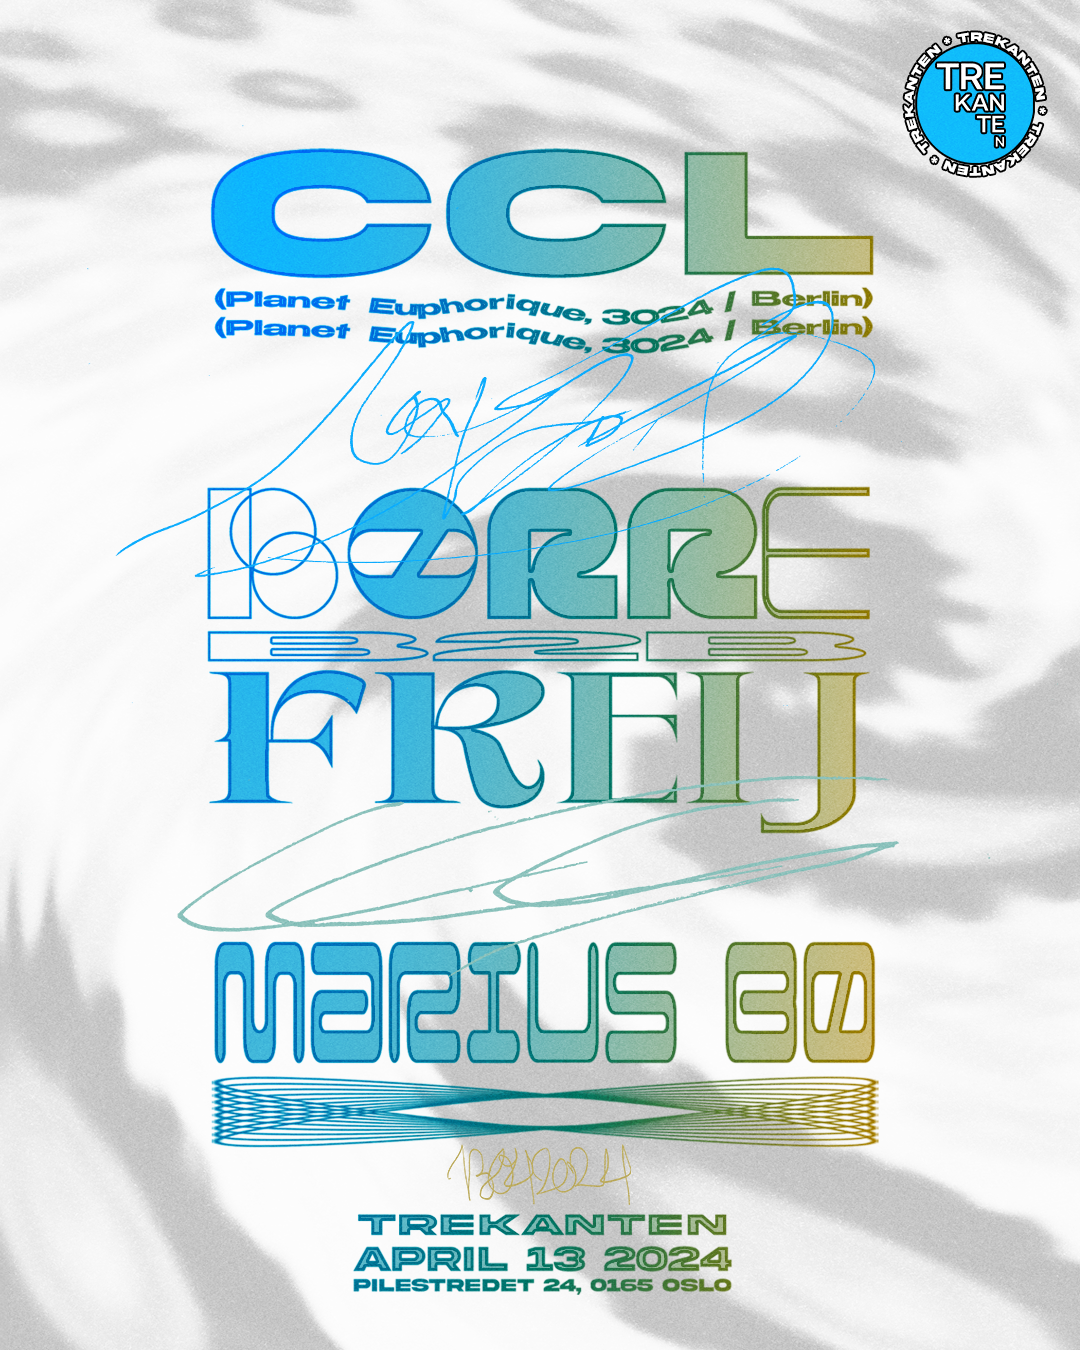 CCL (Planet Euphorique), Marius Bø, Børre b2b freij - Página frontal